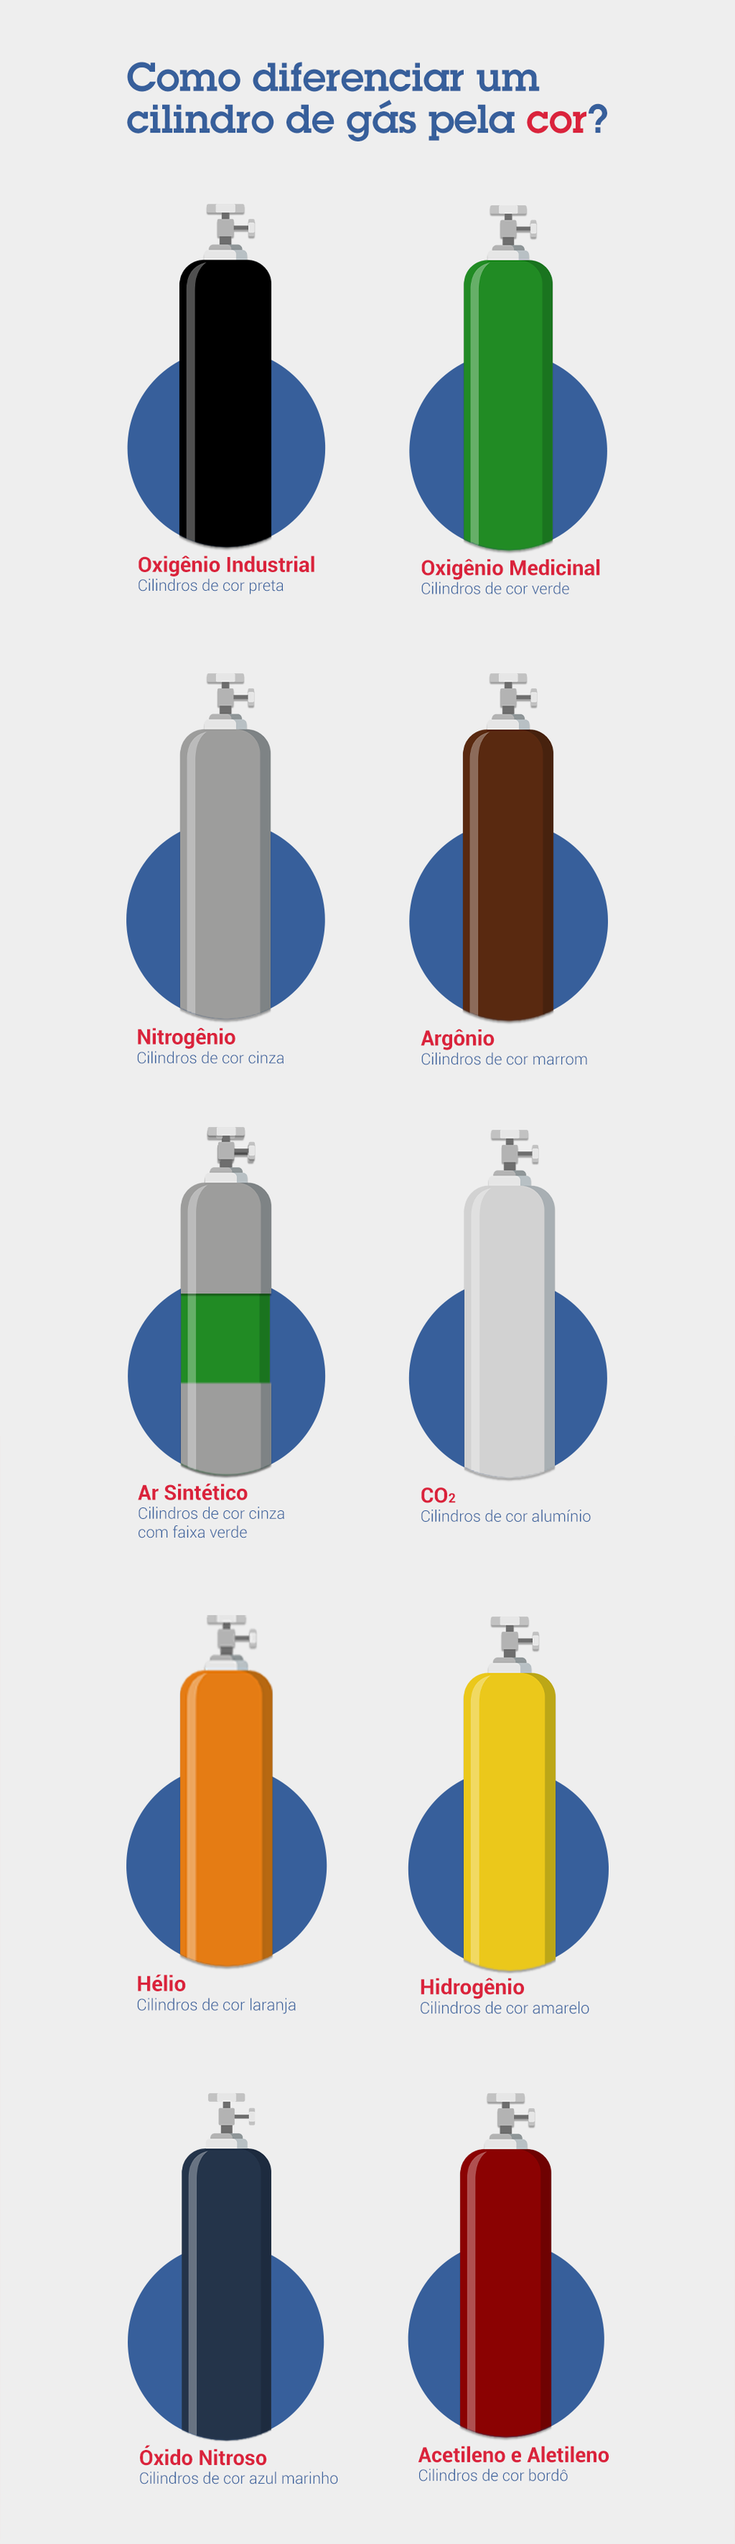 Infográfico sobre como diferenciar um cilindro de gás pela cor